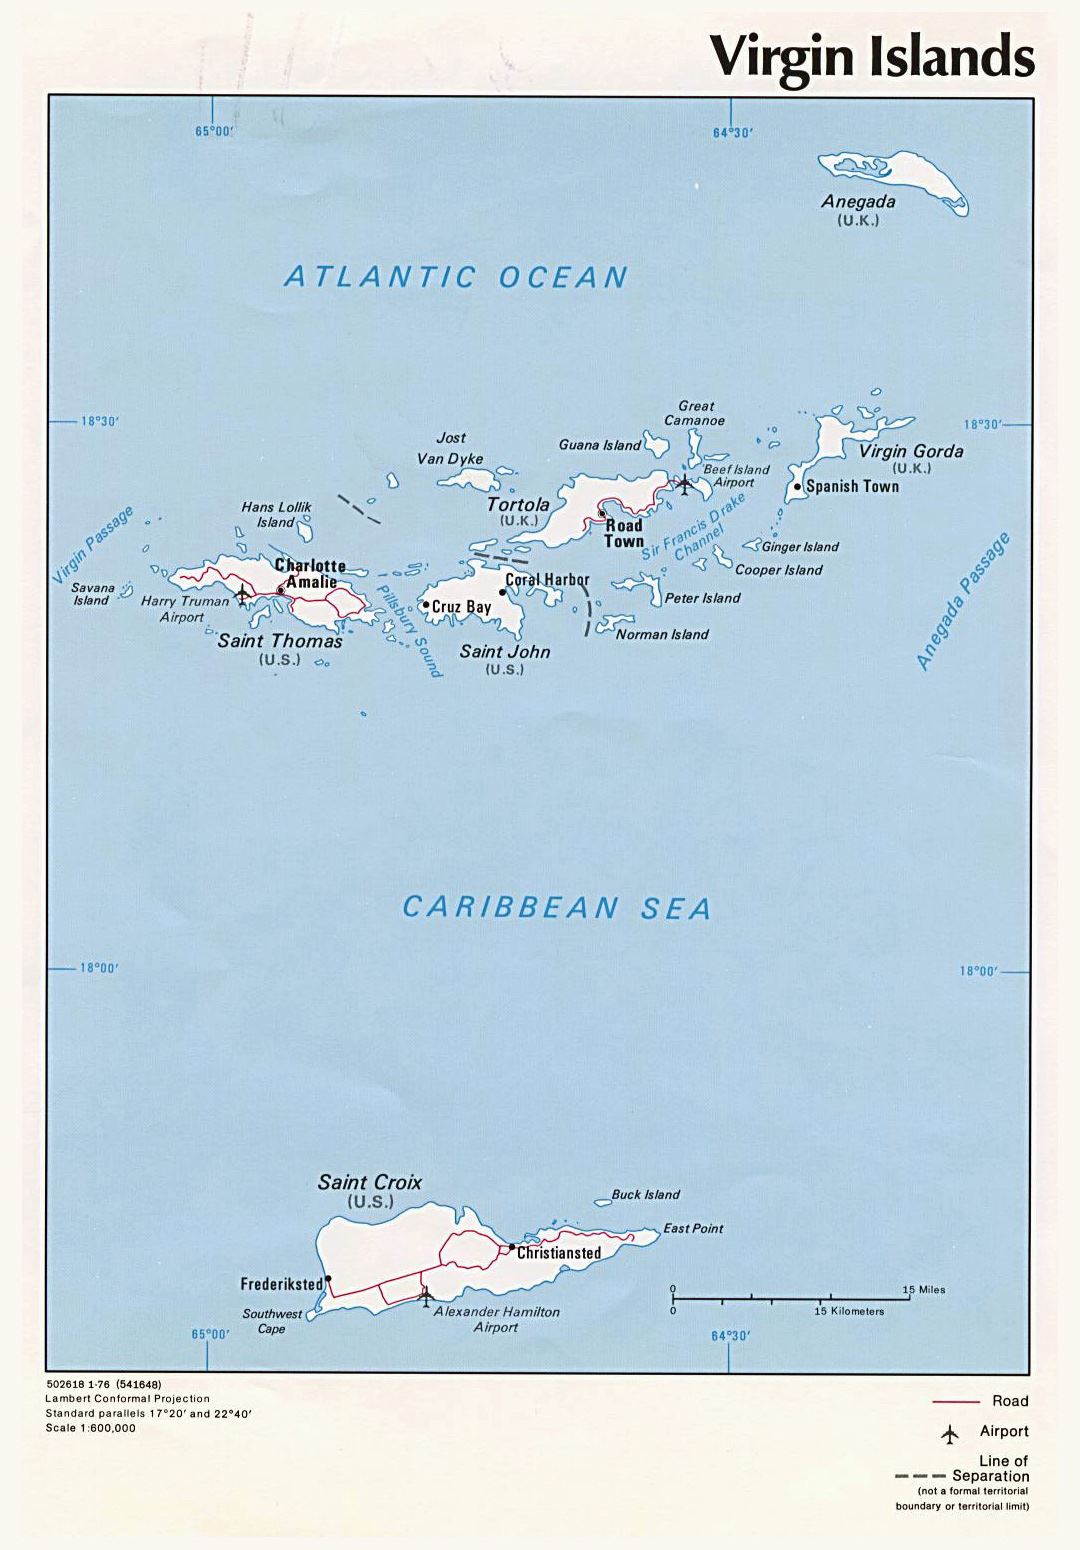 Детальная политическая карта Британских Виргинских островов с дорогами, крупными городами и аэропортами - 1976